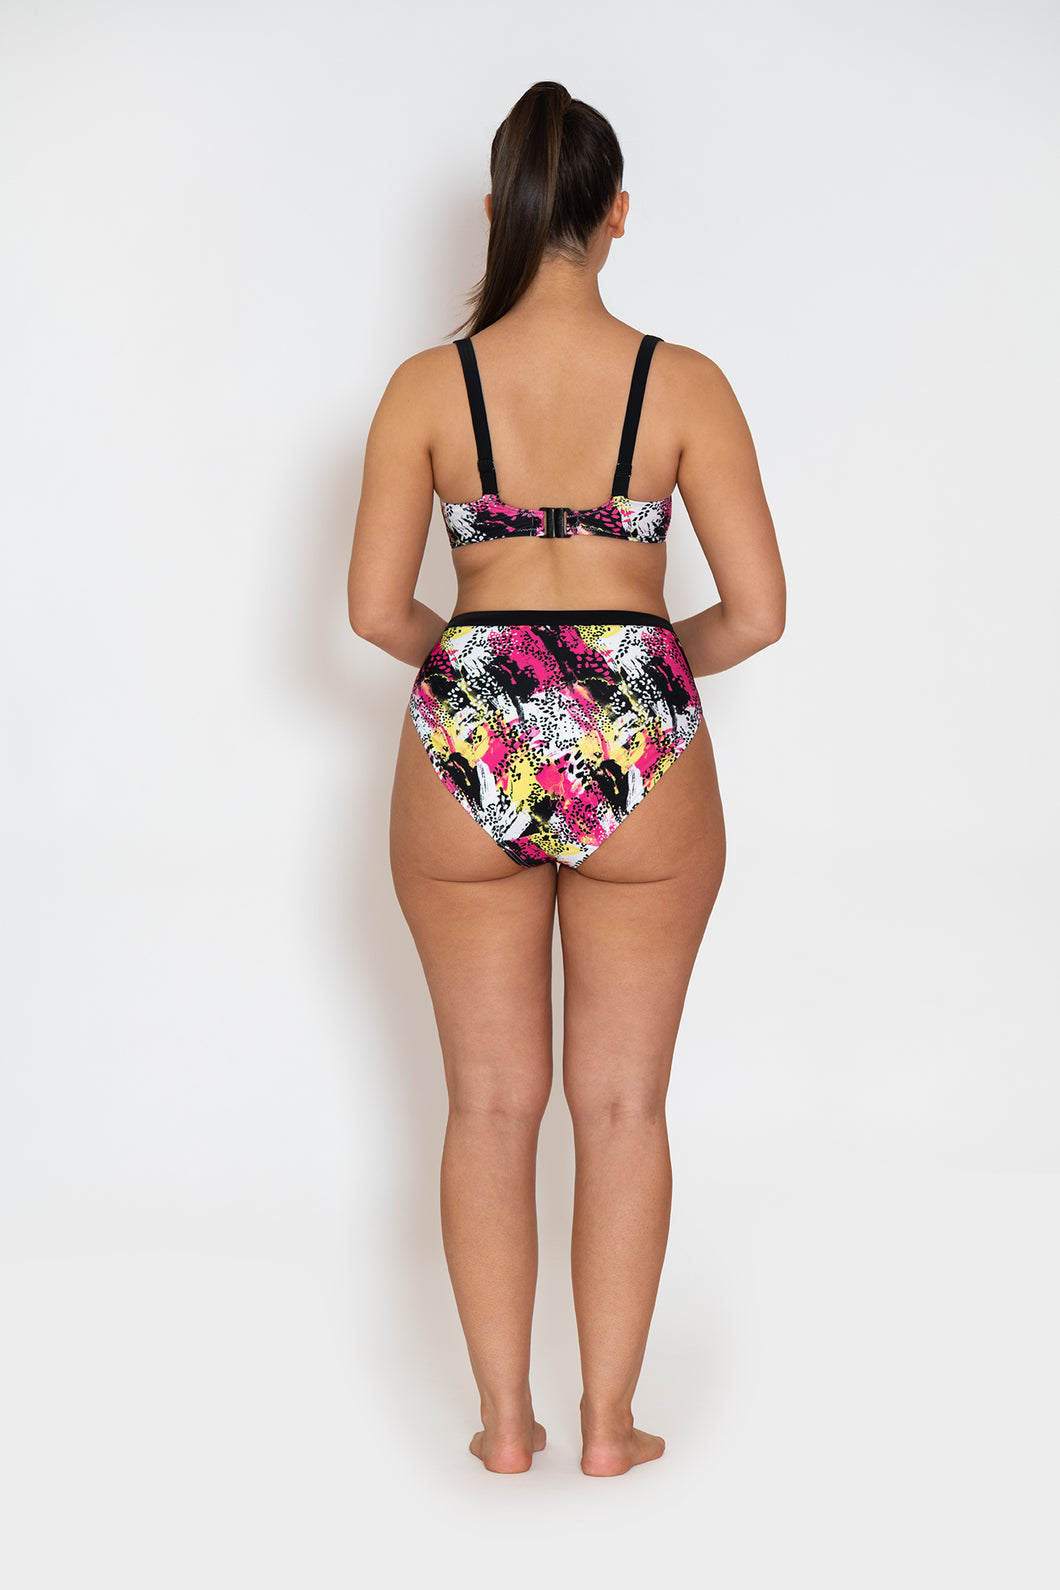 https://www.uplifting-bras.com/cdn/shop/products/GirlsNight-sealeopard-print-bikini-f1_530x@2x.jpg?v=1614211737